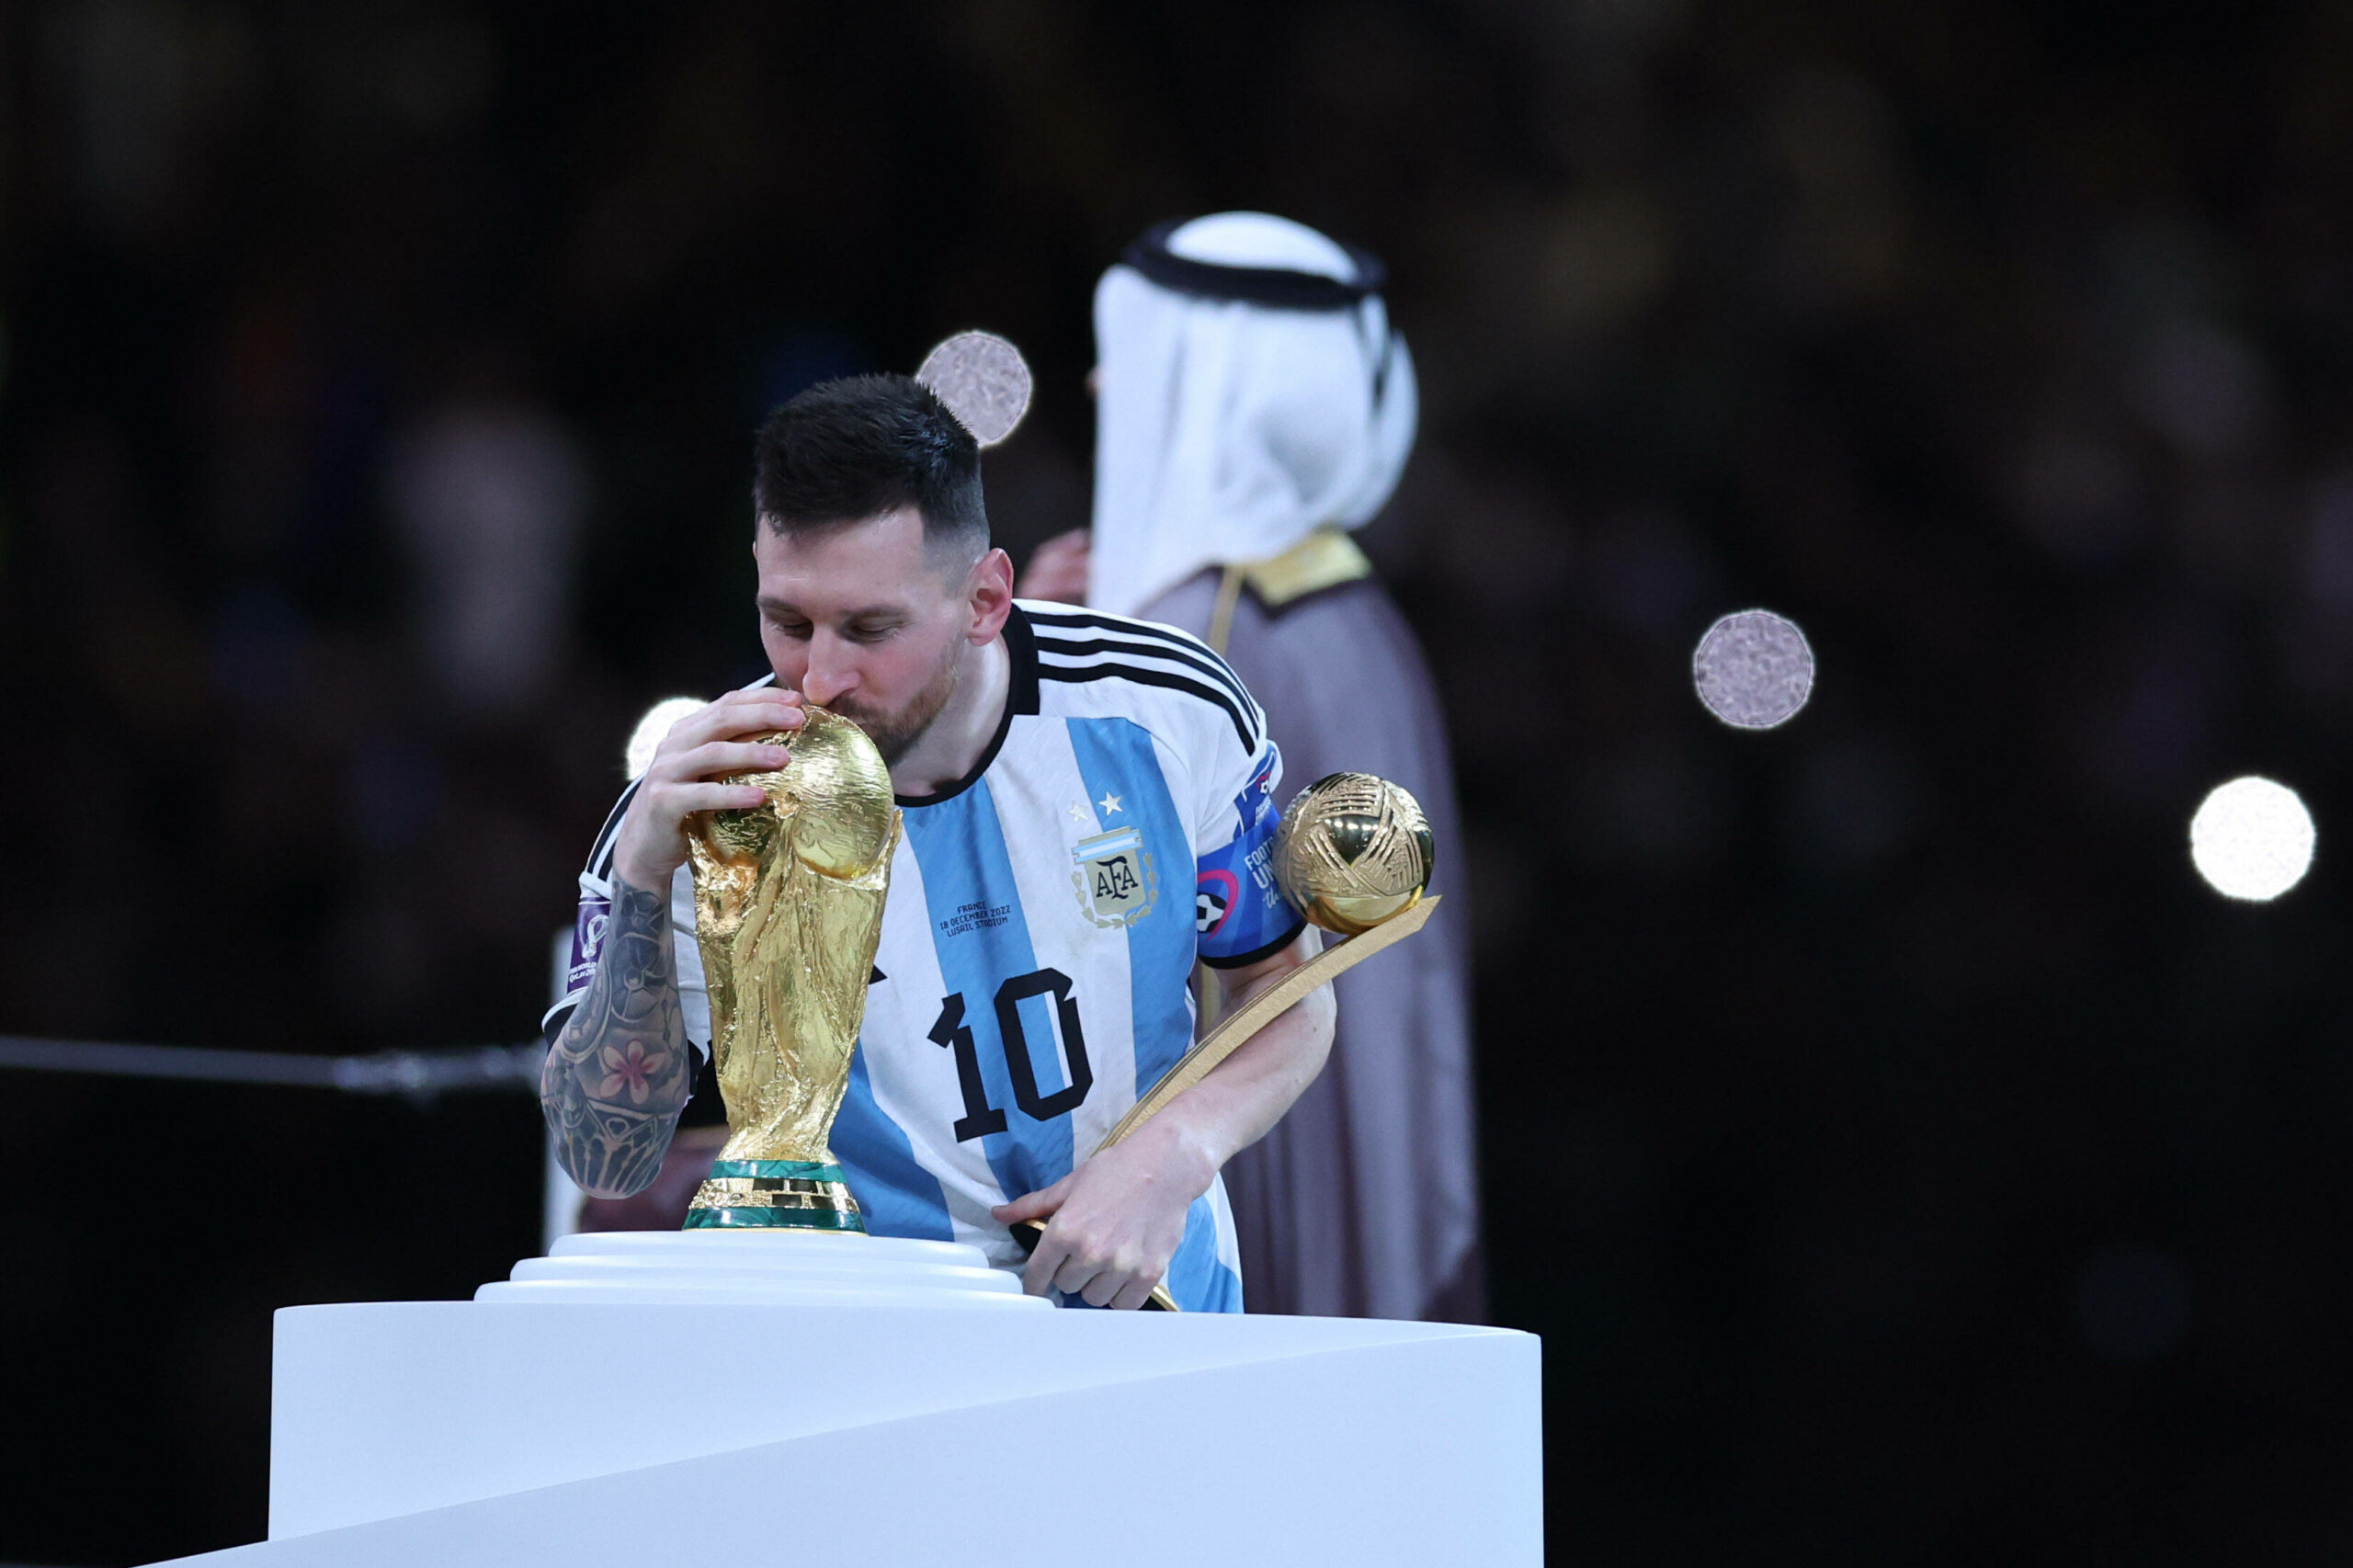 Endlich am Ziel: Mit 35 Jahren krönte Lionel Messi Argentinien und sich zum Weltmeister.